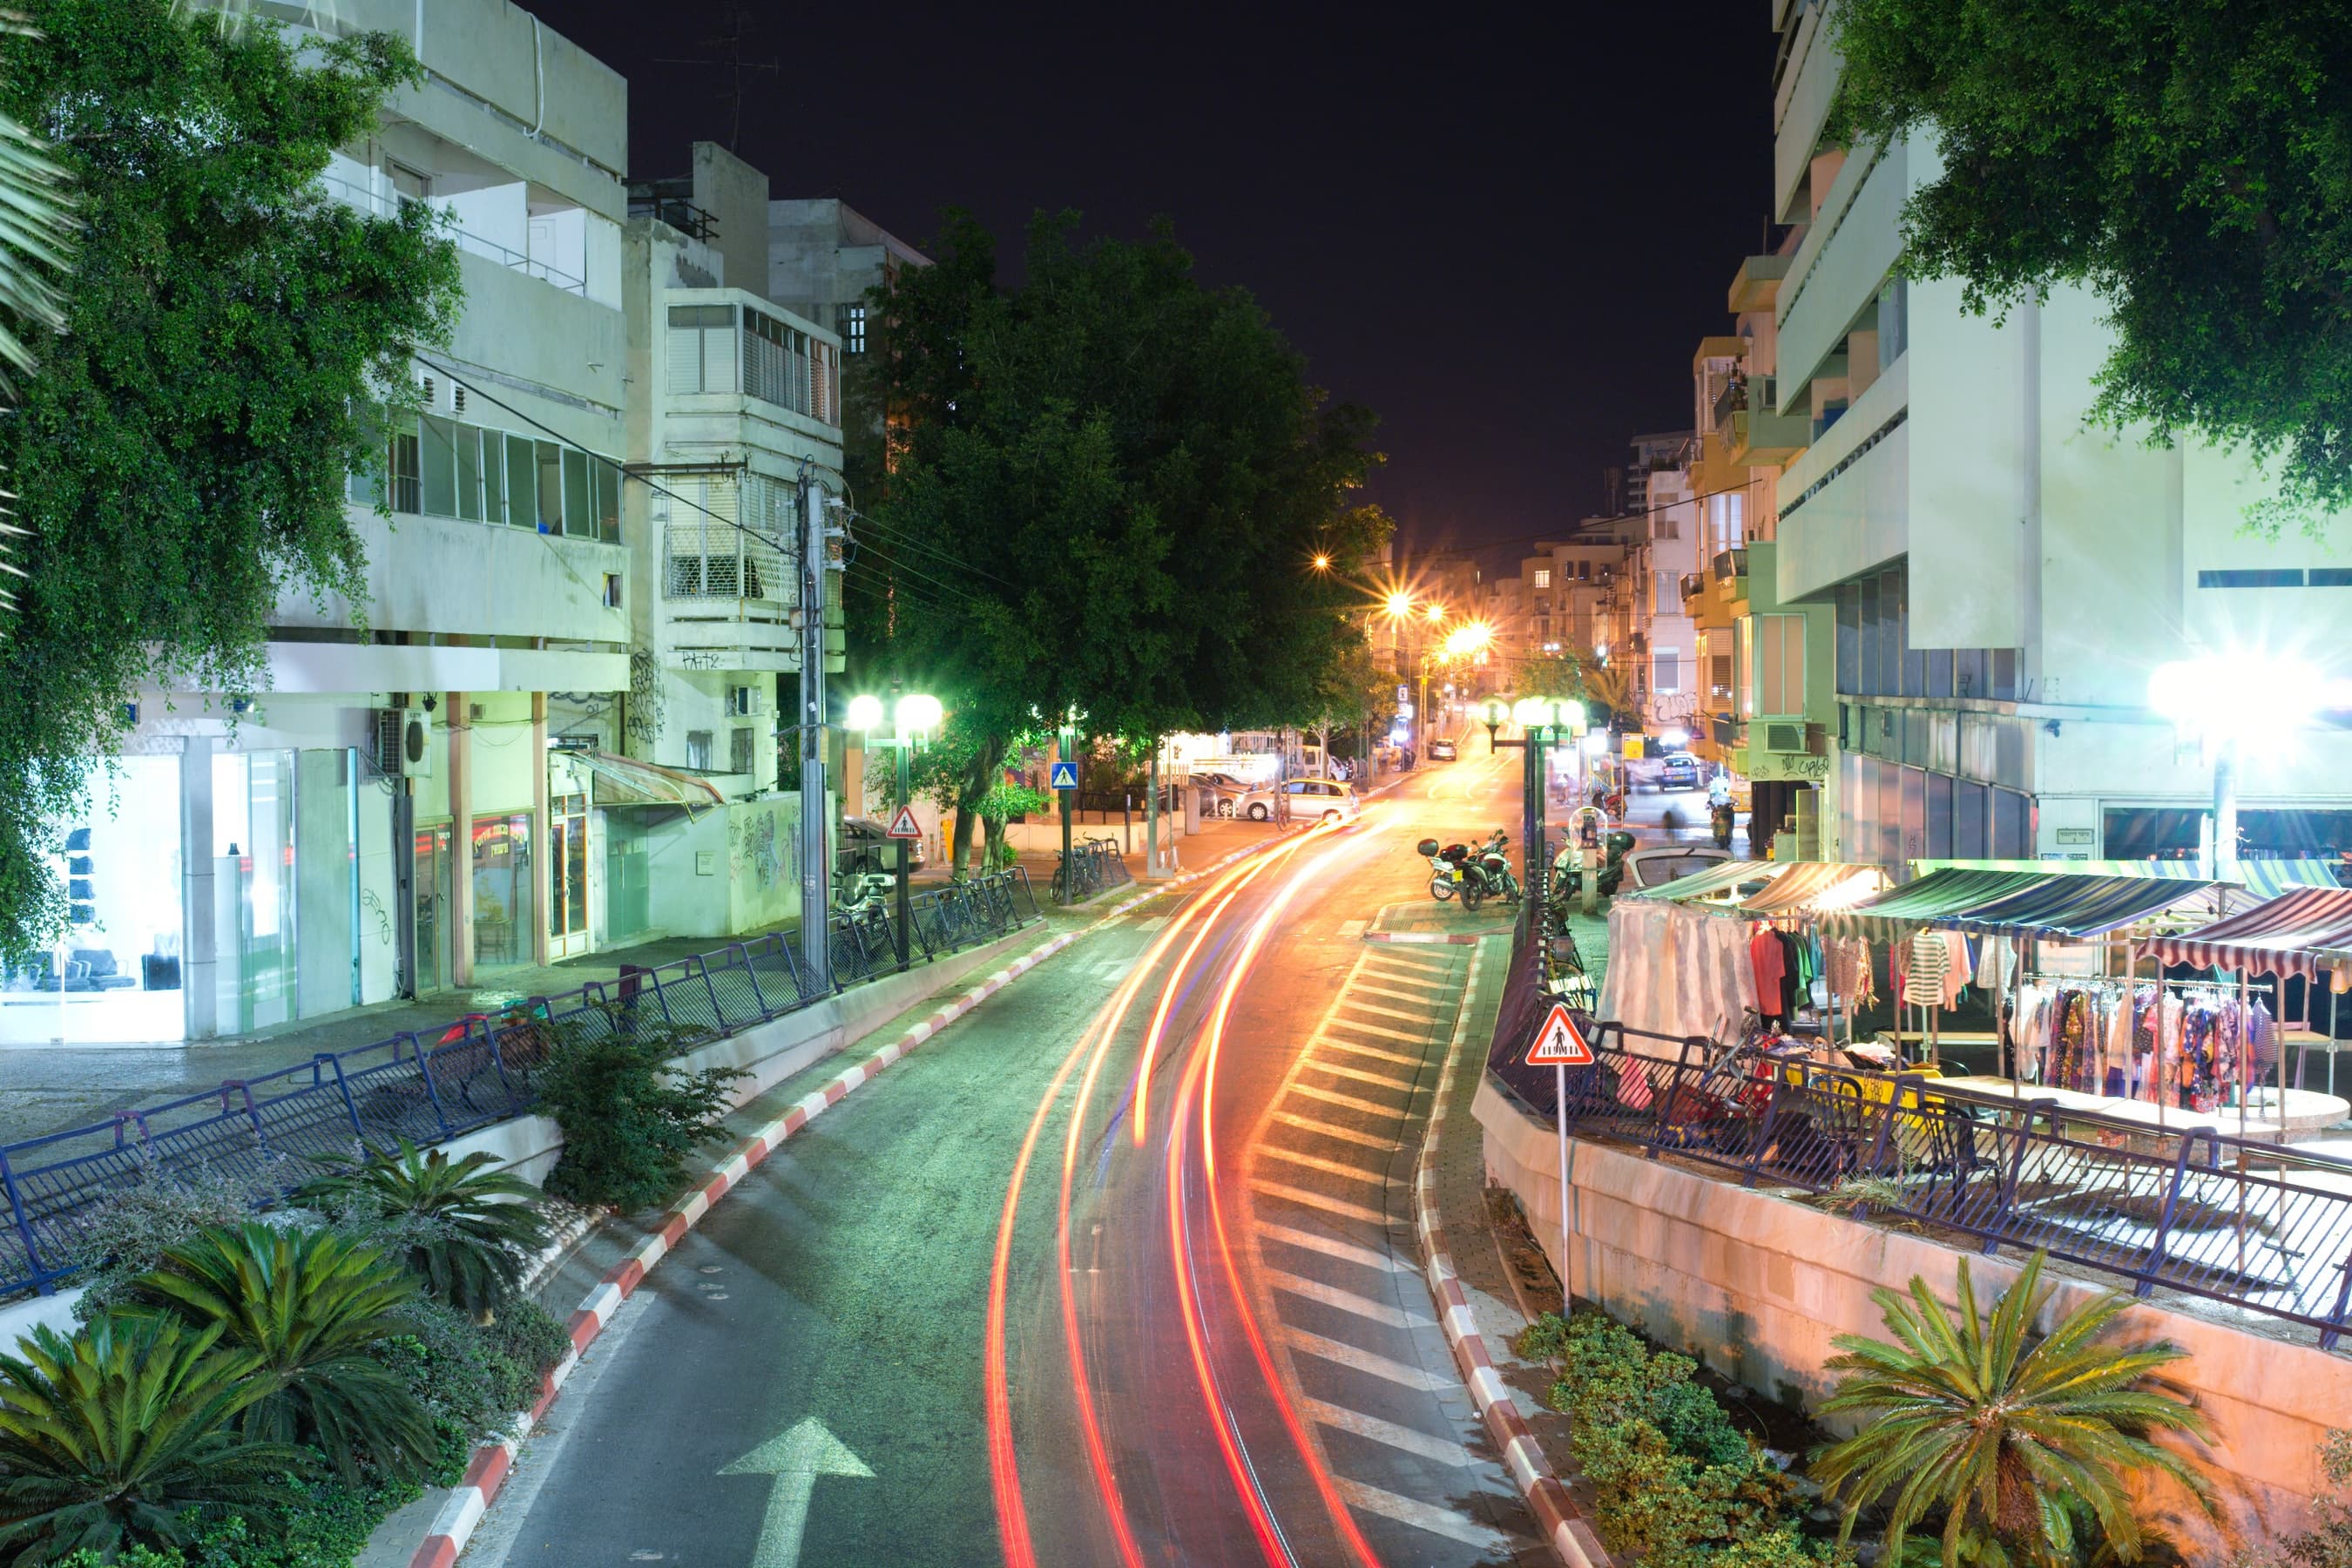 Night street in Tel Aviv